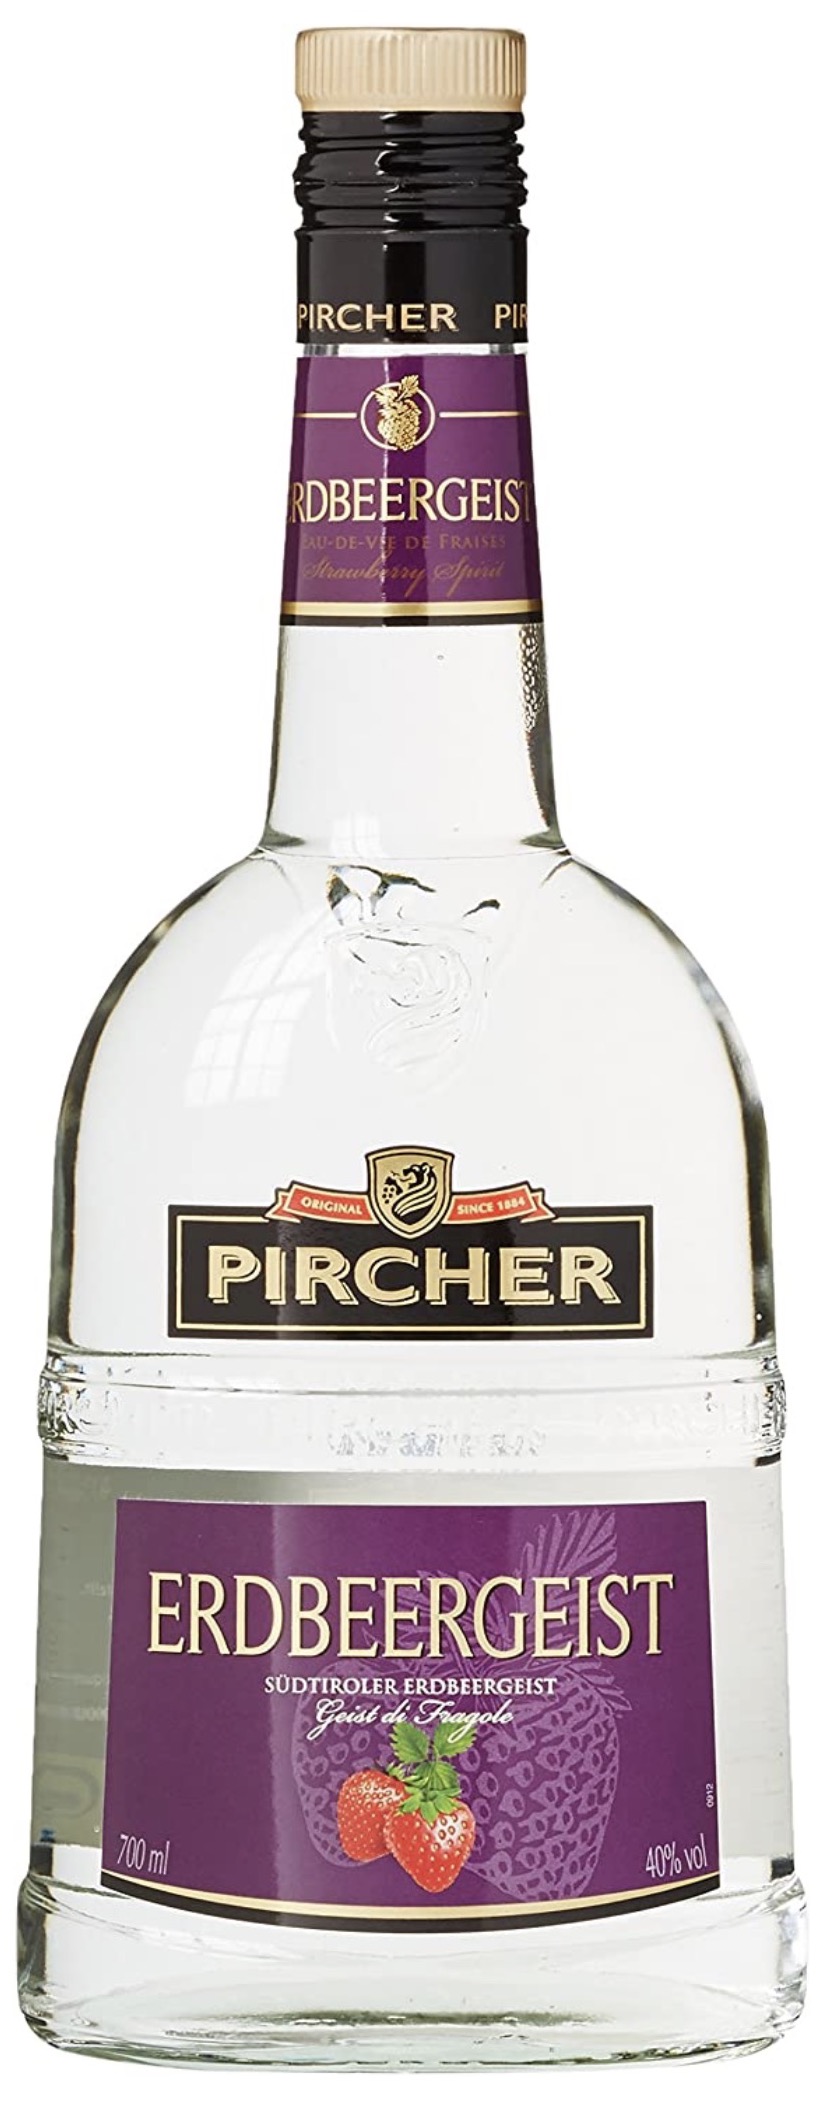 Pircher Erdbeergeist 40% vol. 0,7L